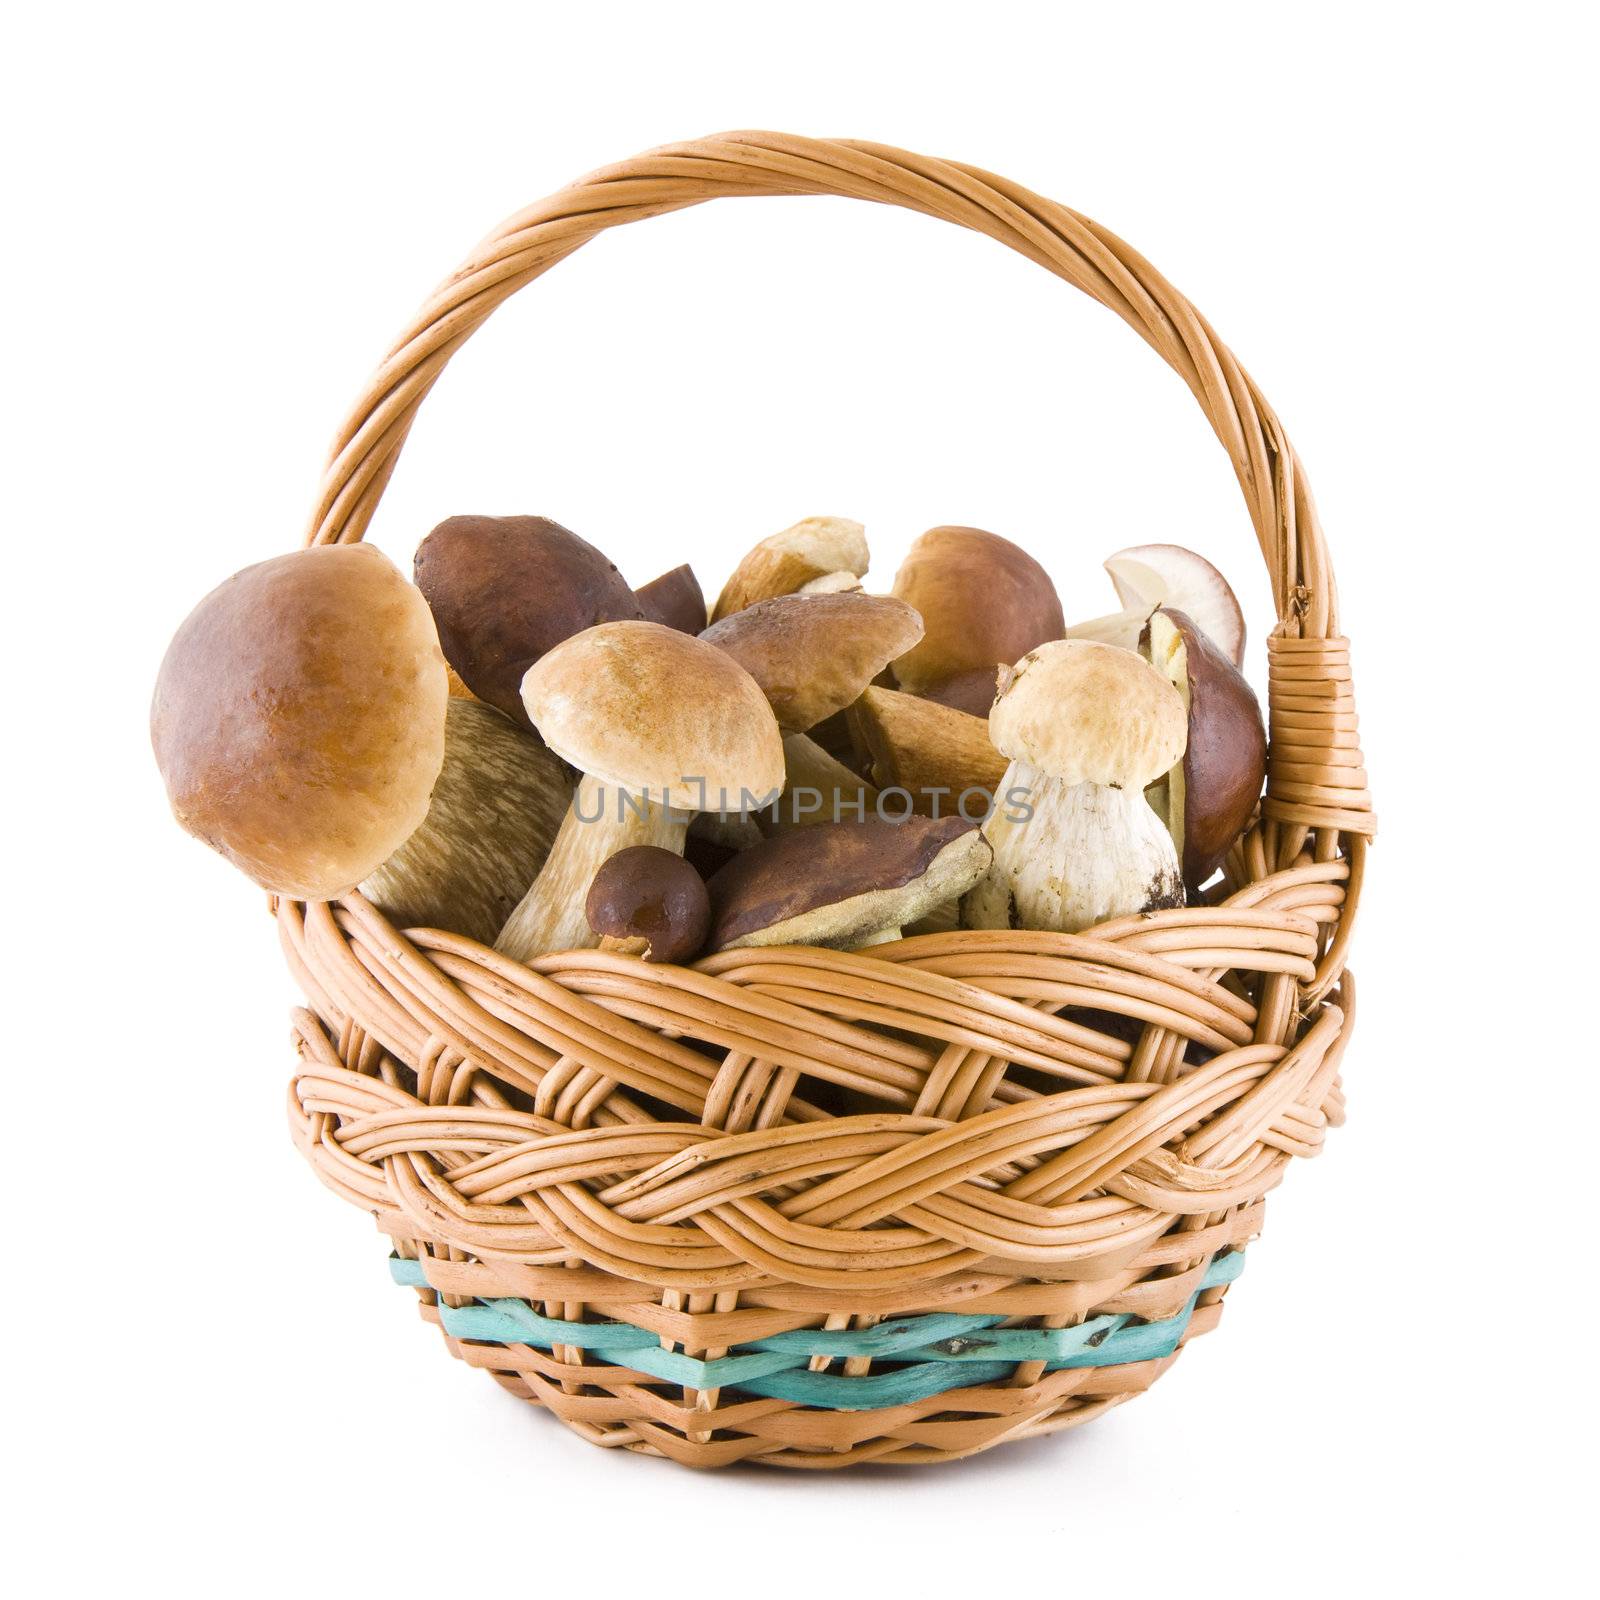 Mushrooms in a basket by Gbuglok